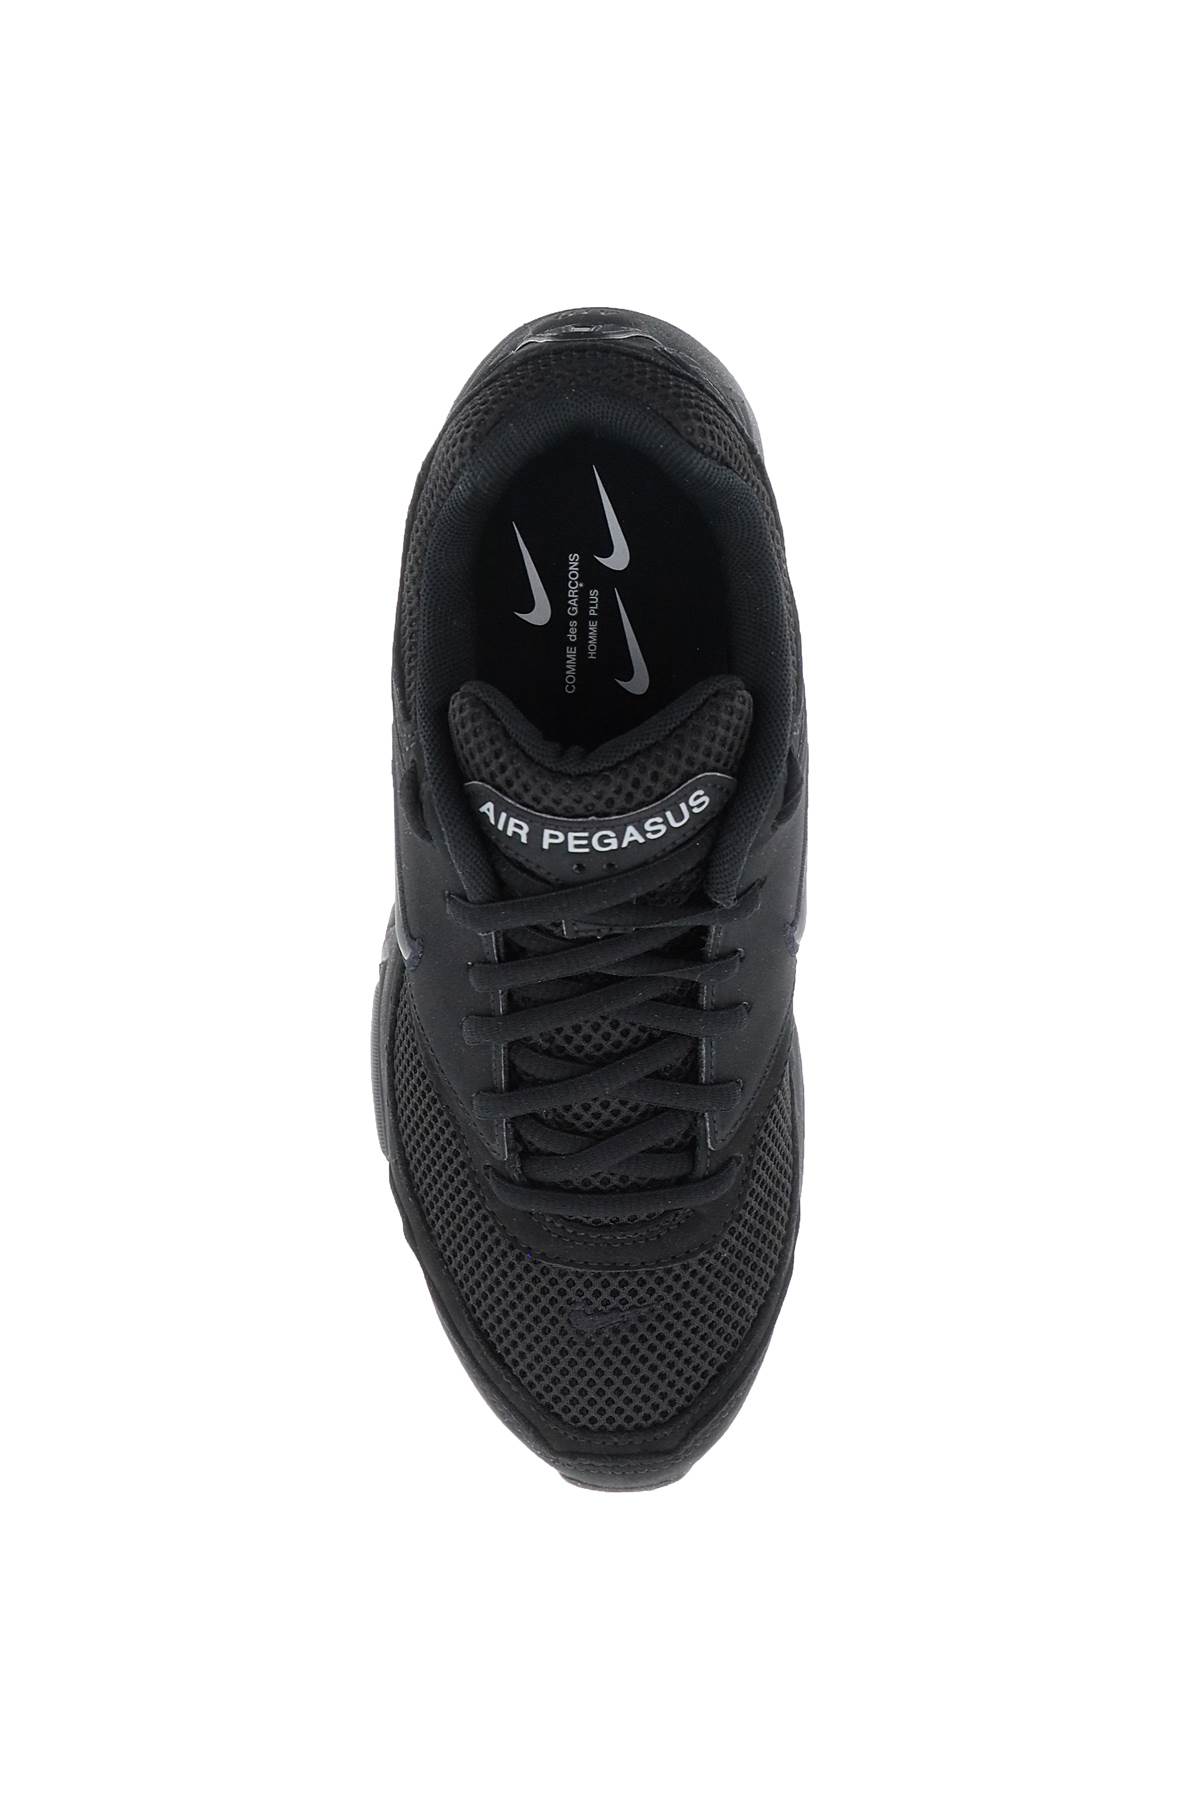 Shop Comme Des Garçons Homme Deux Air Pegasus 2005 Sp Sneakers X Nike In Black (black)